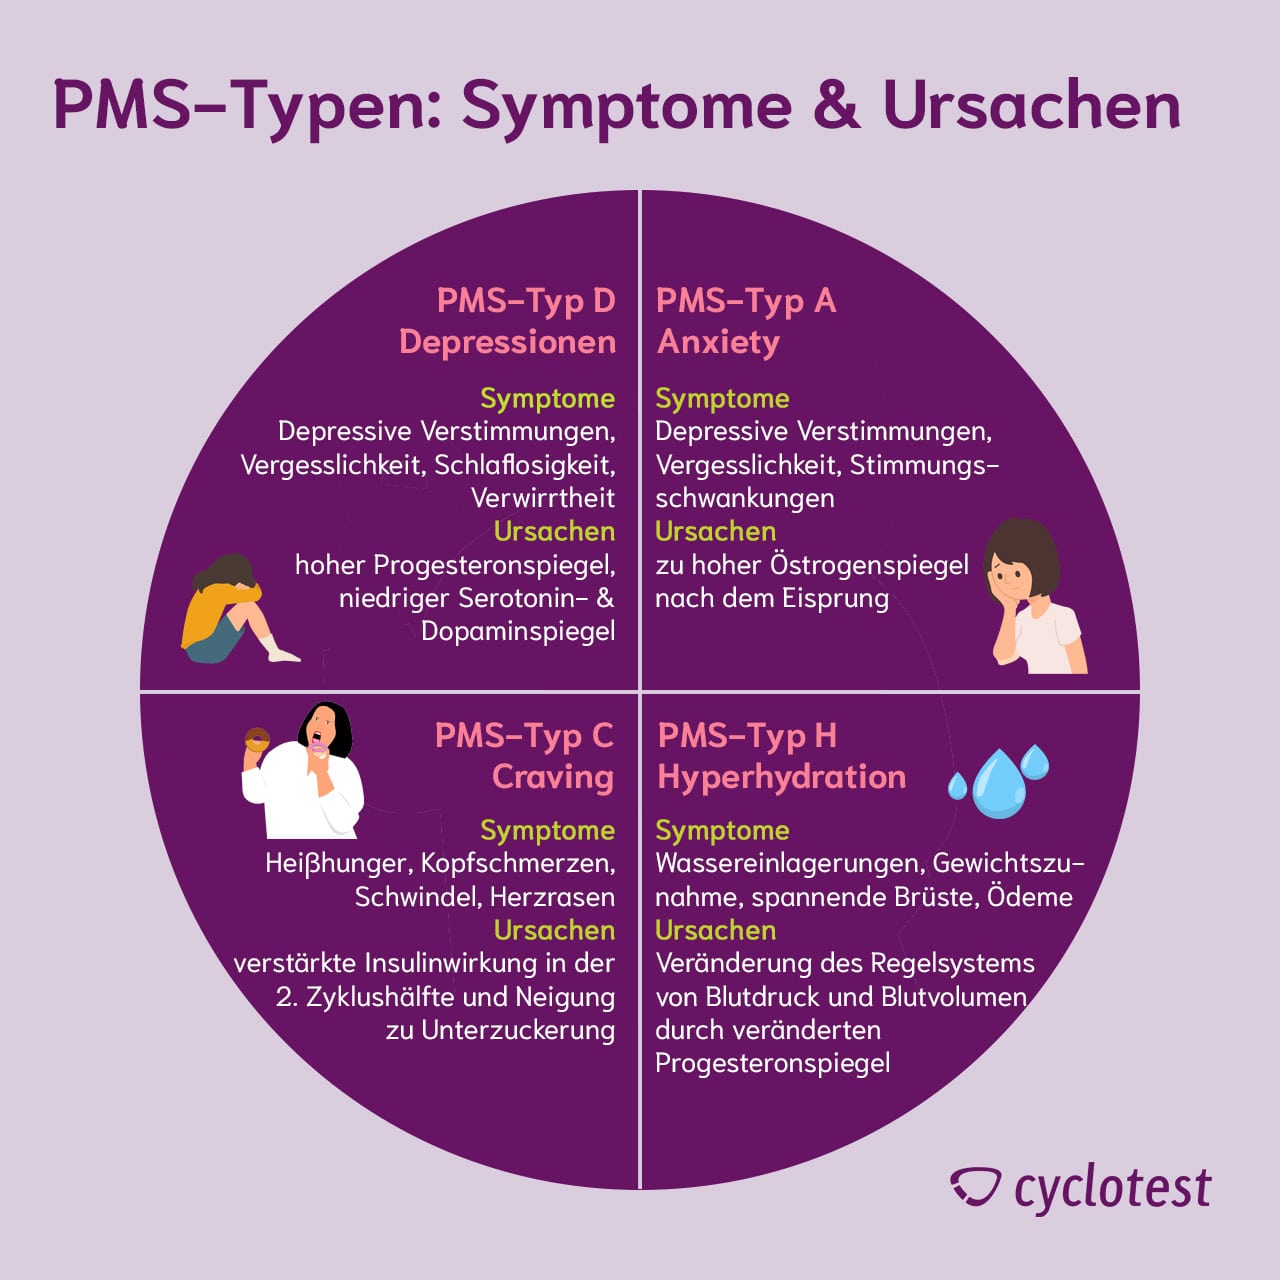 PMS-Typen: Symptome und Ursachen